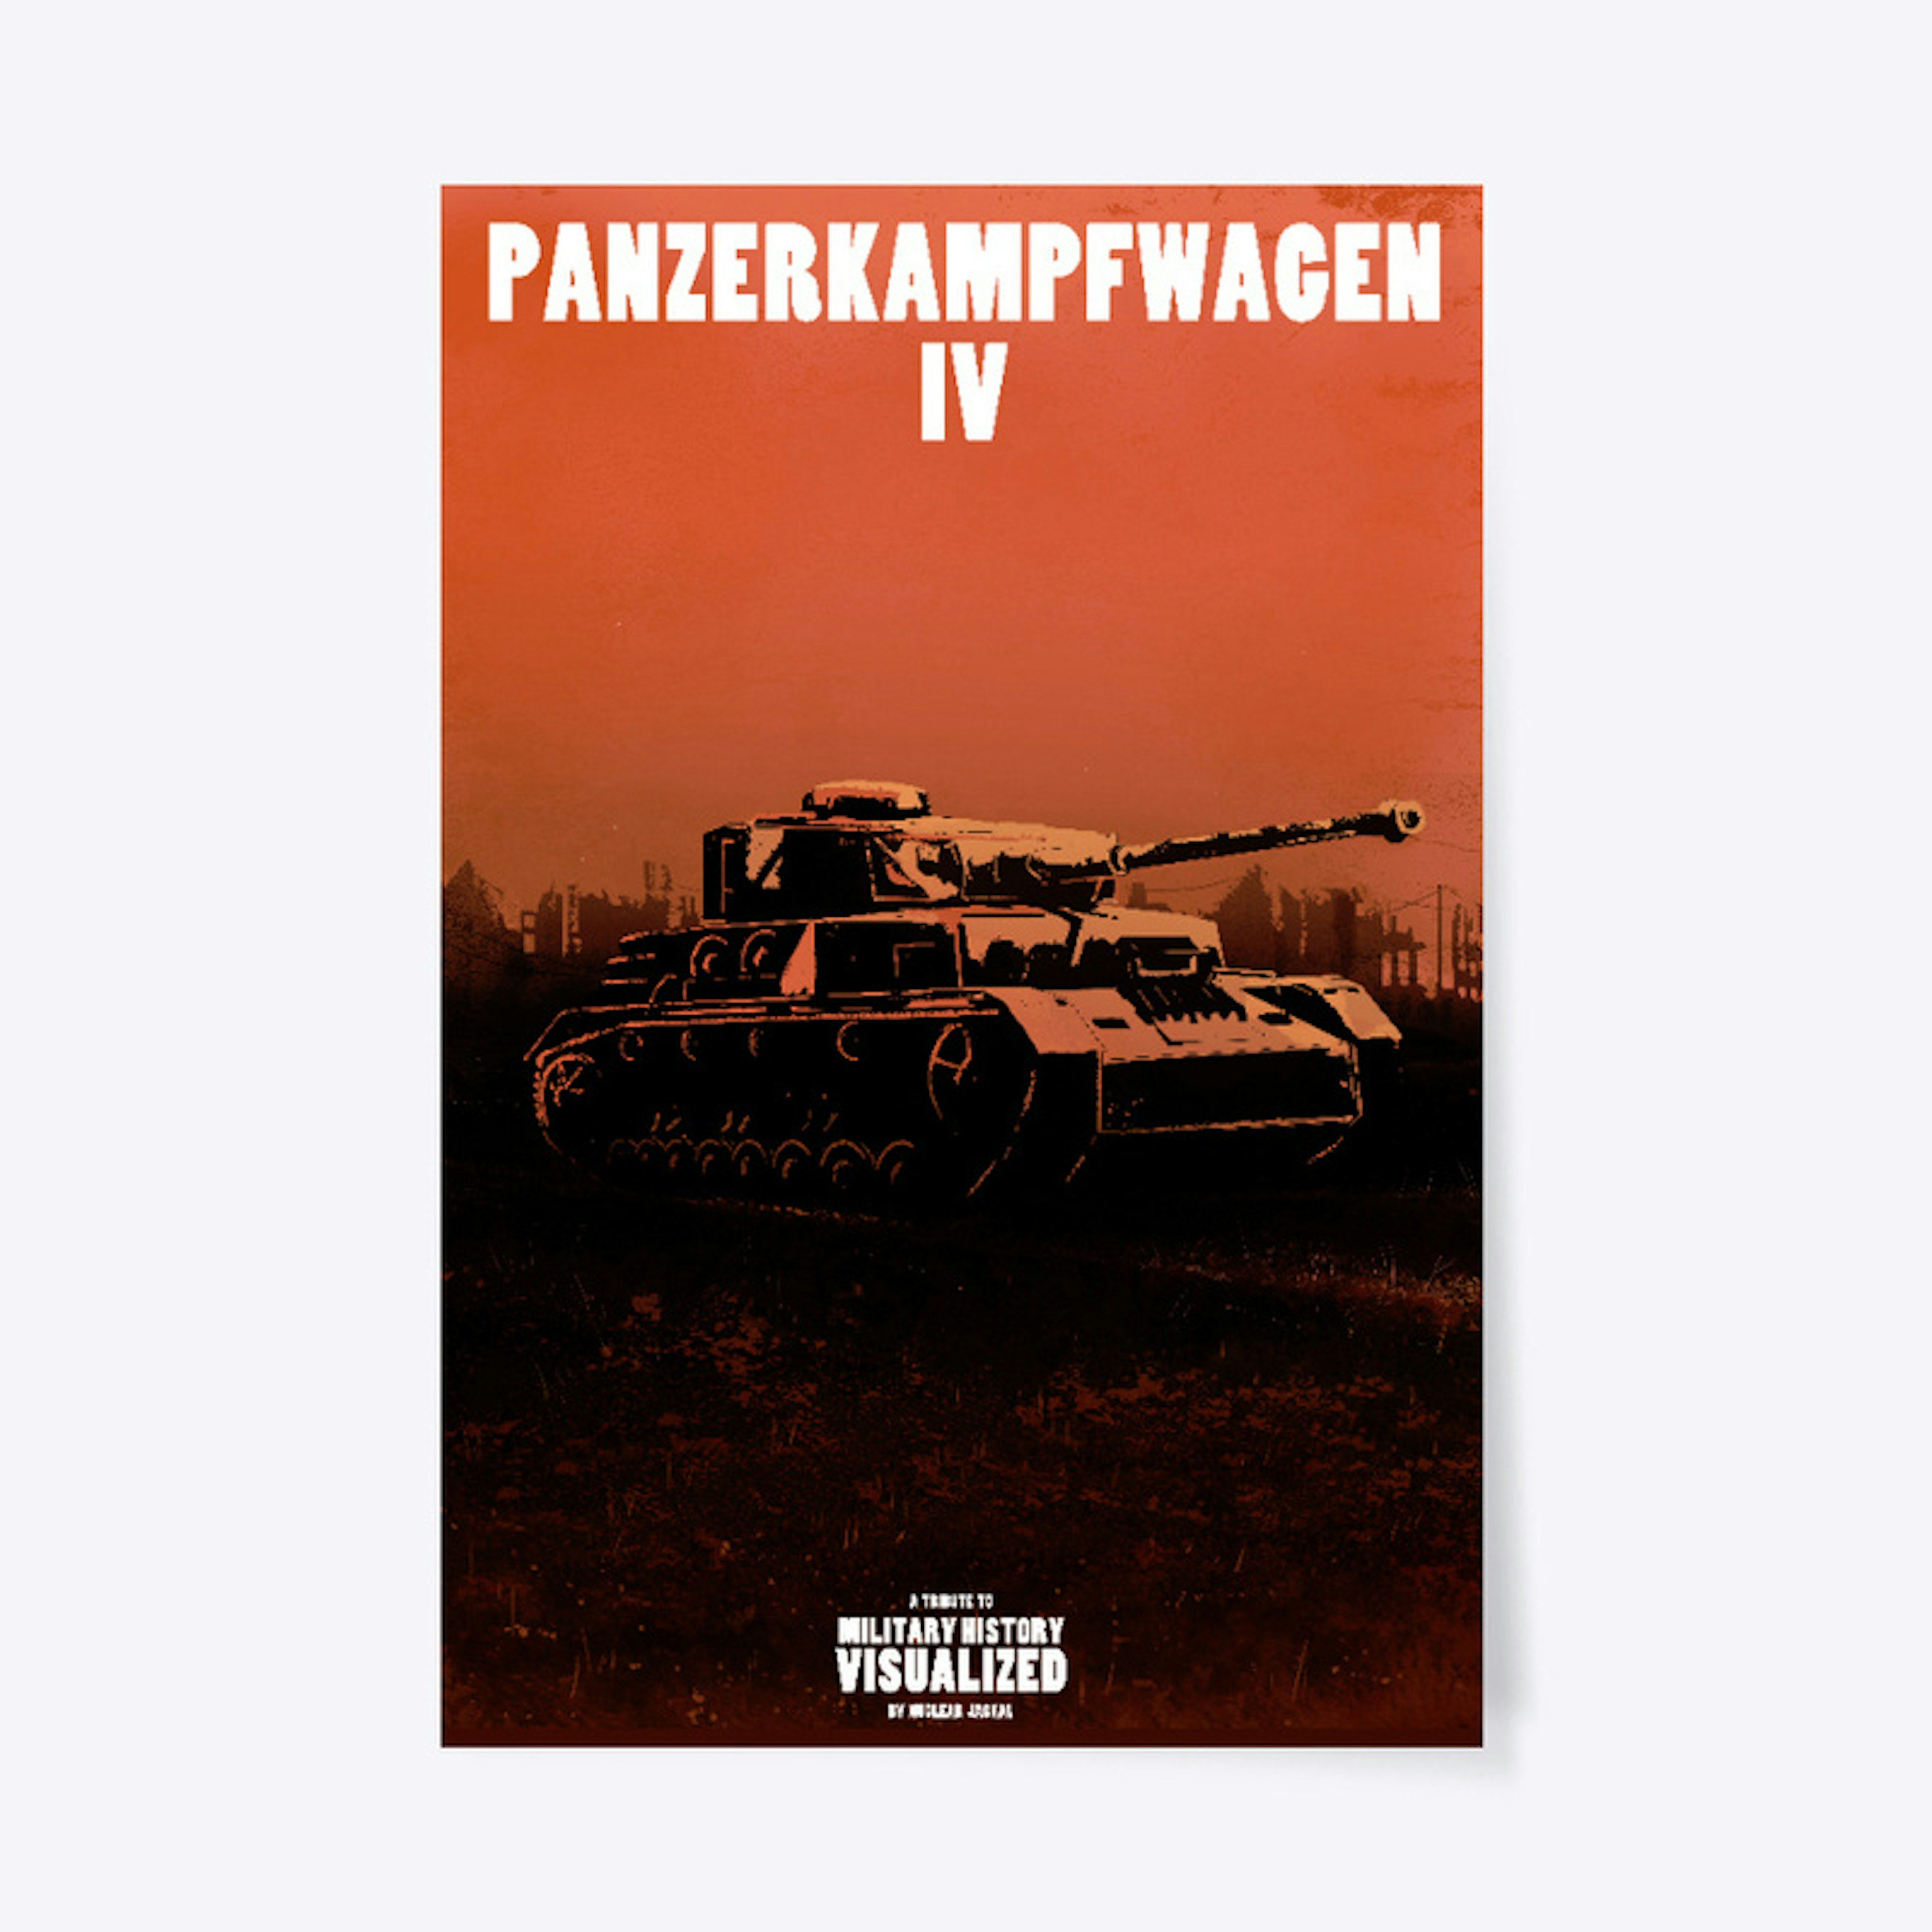 Panzerkampfwagen IV - (Nuclear Jackal)